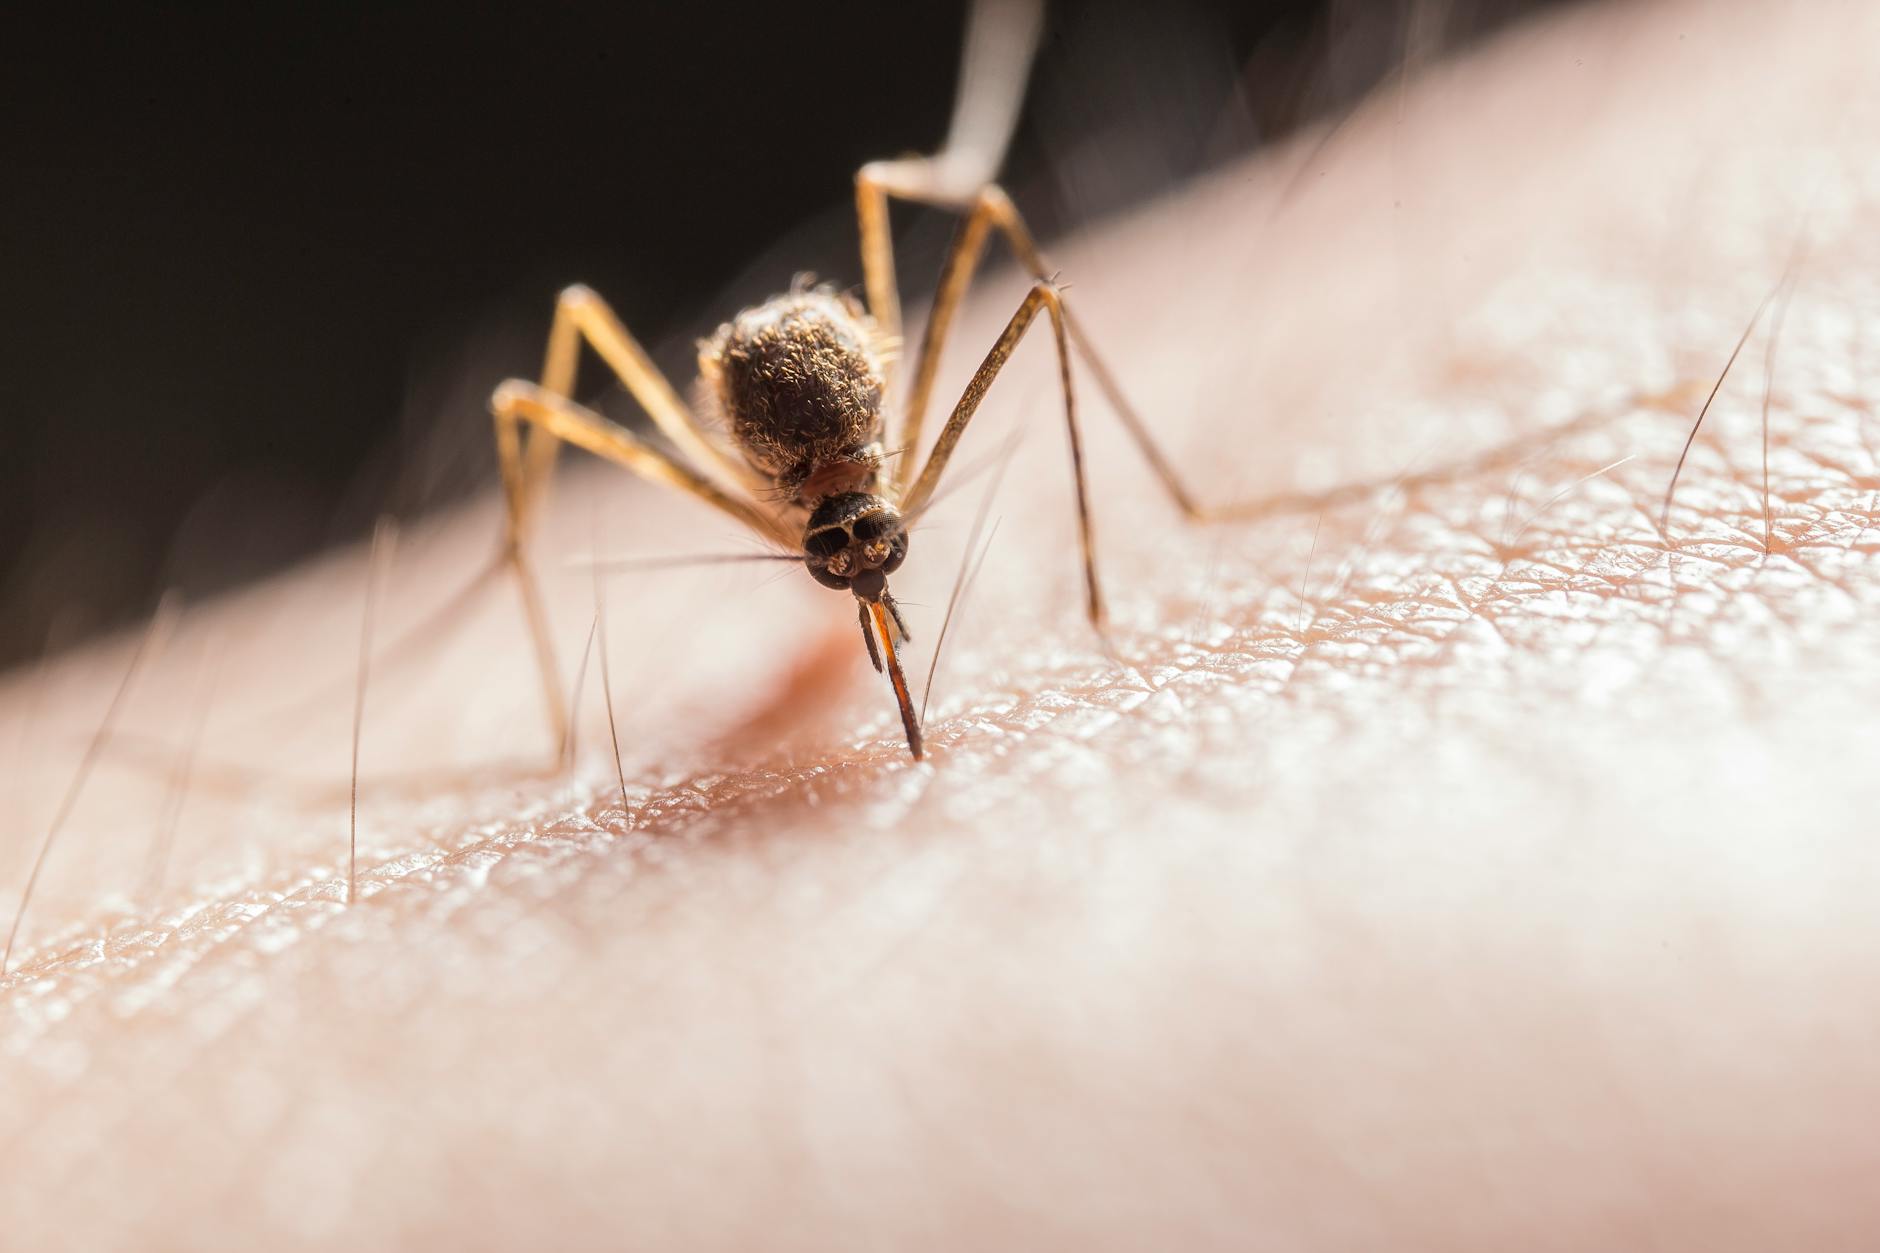 hoaks tentang covid-19 - nyamuk menularkan corona